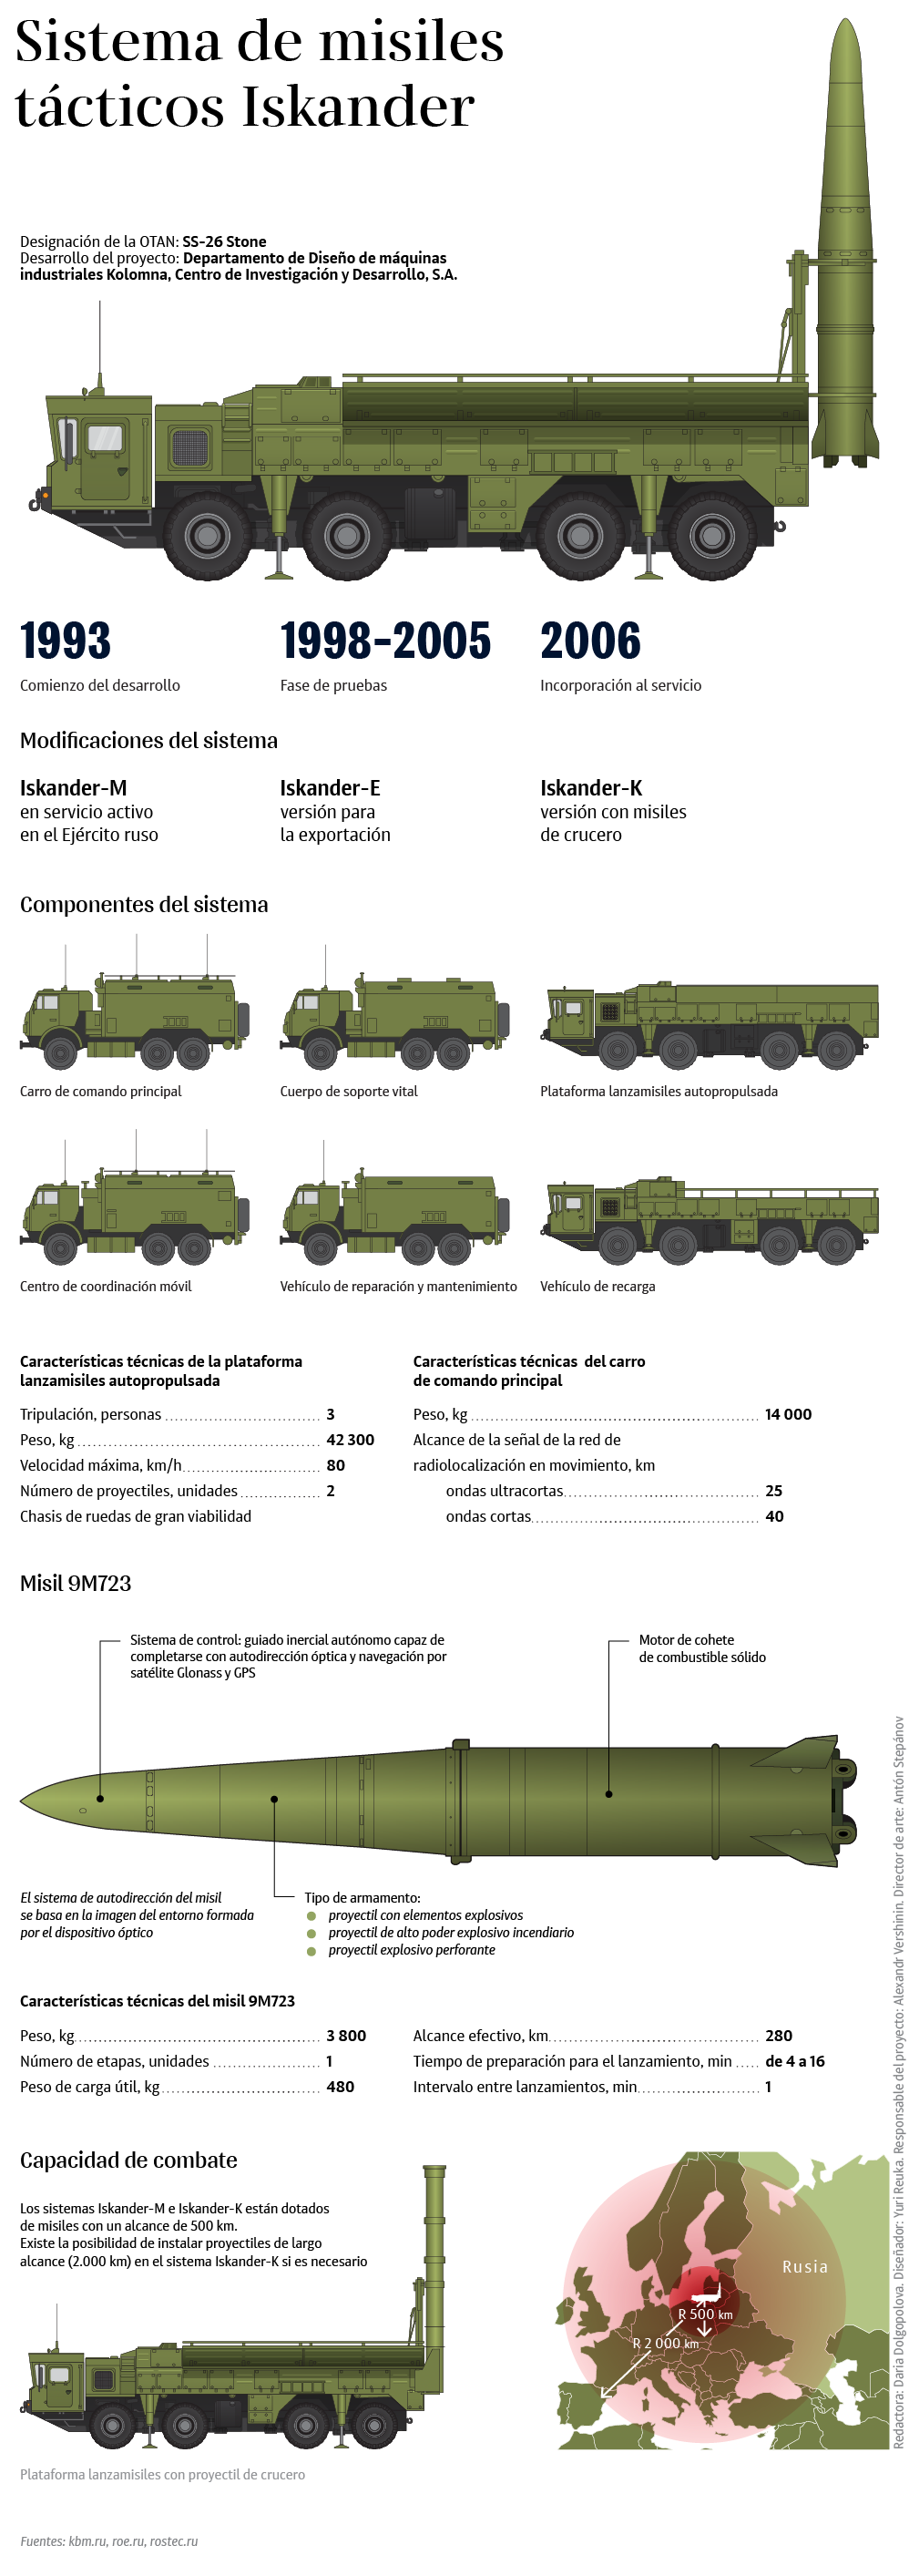 Capacidades y versiones del temible sistema ruso de misiles tácticos Iskander - Sputnik Mundo